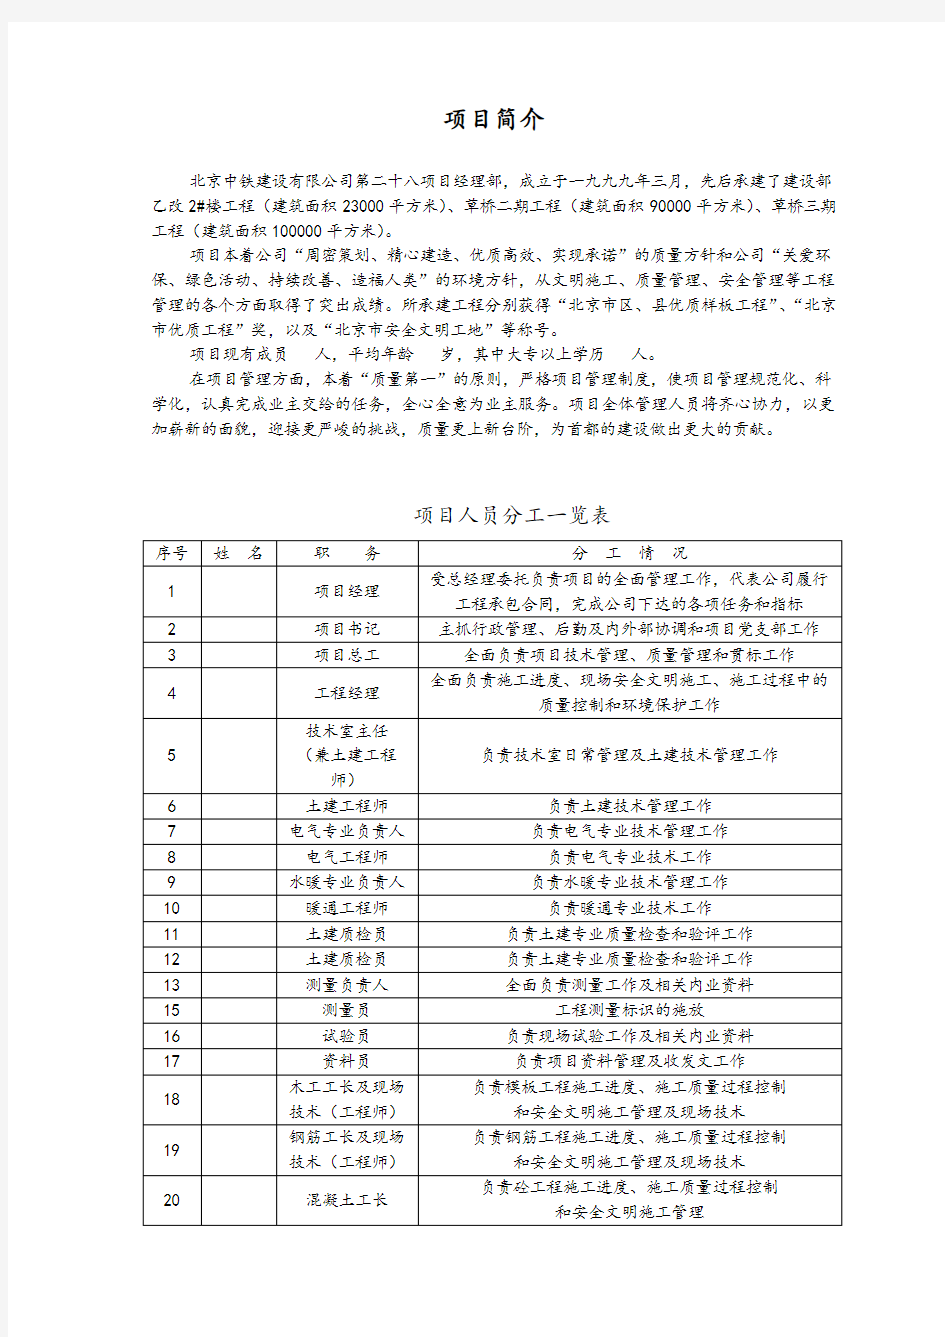 北京中铁建设工程项目部管理制度汇编